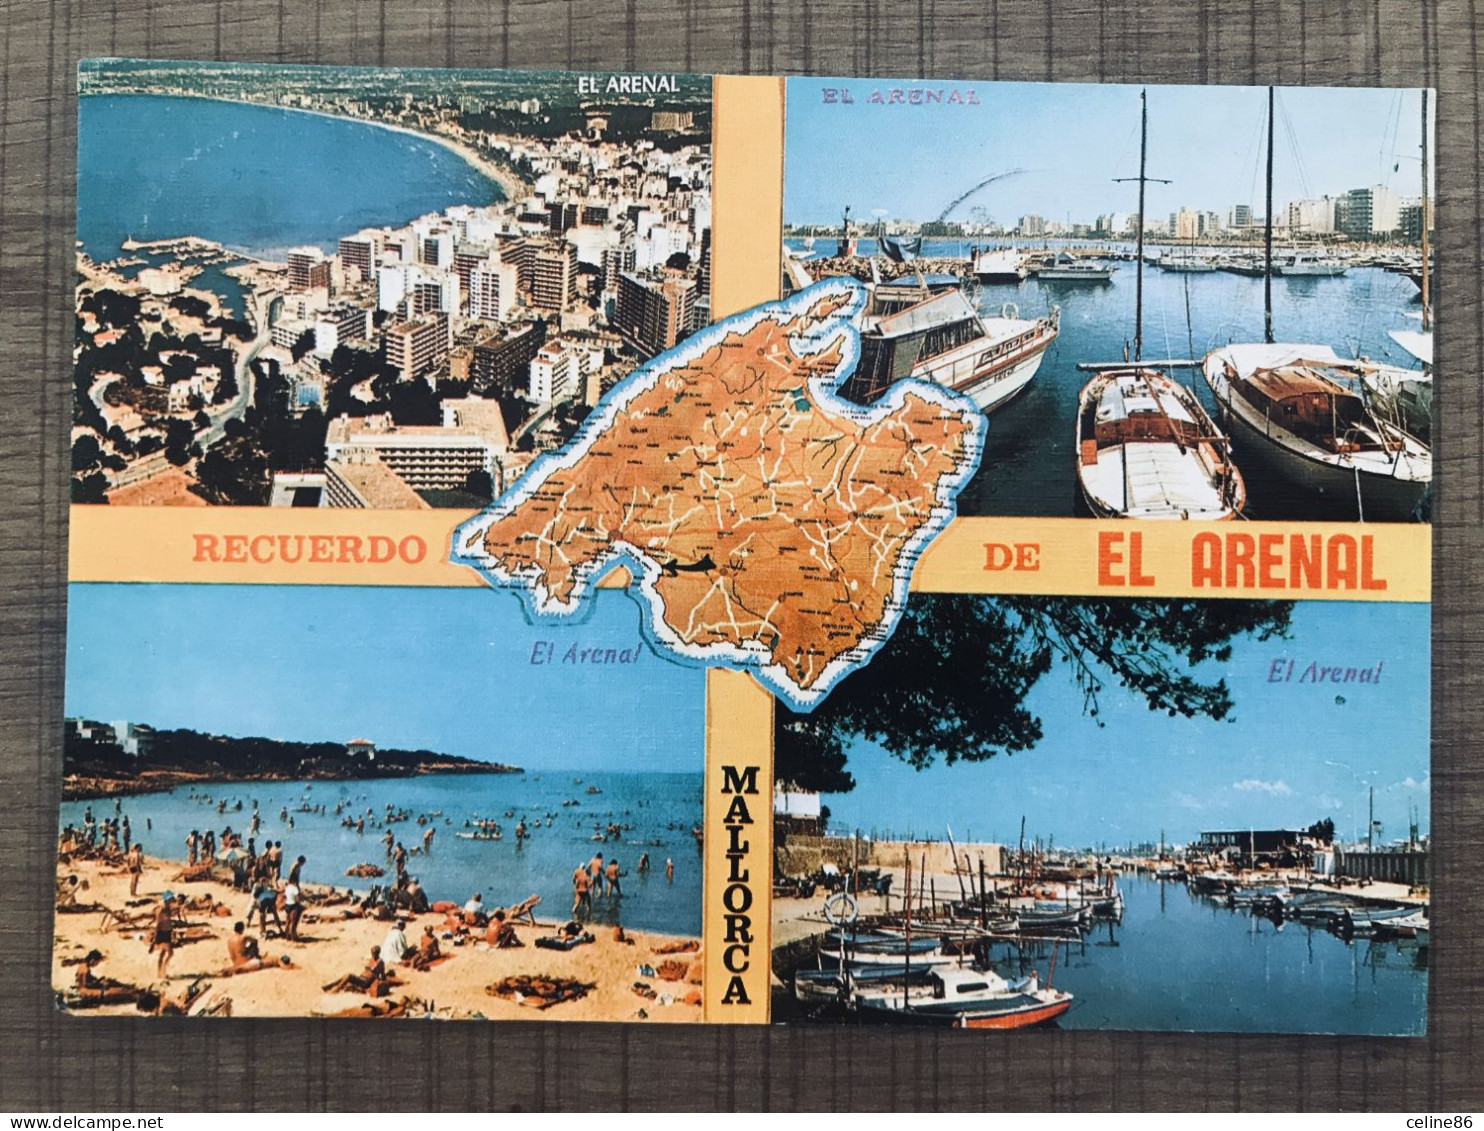  RECUERDO EL ARENAL MALLORCA  - Mallorca